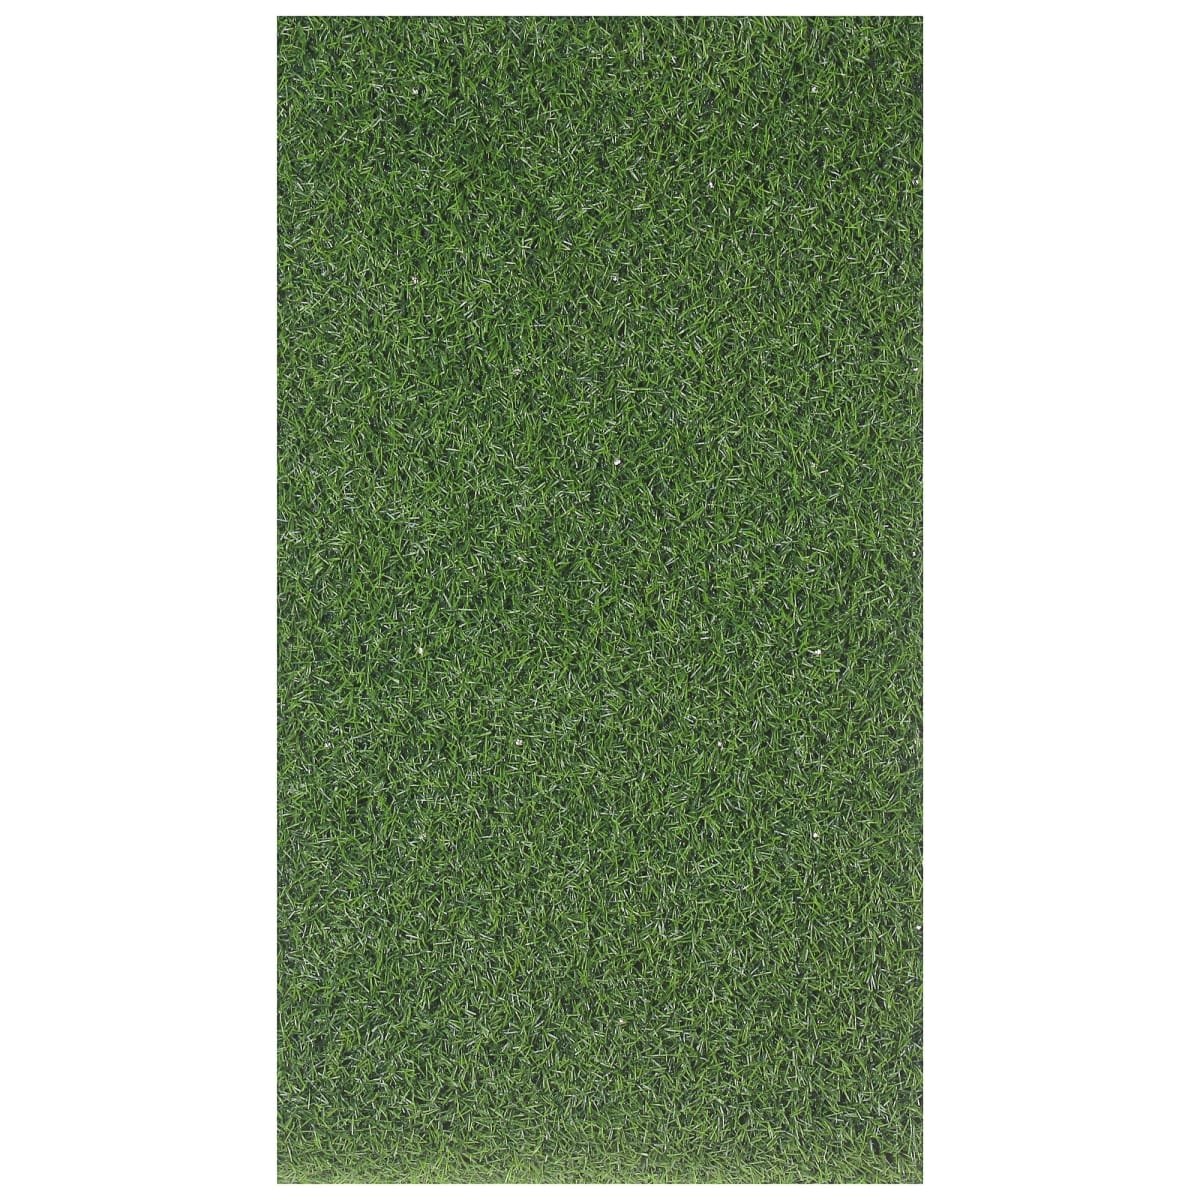 Купить траву в леруа мерлен. Искусственный газон Леруа Мерлен. Трава искусственная 18 мм. Зеленый газон Леруа Мерлен. Эко газон Леруа Мерлен.